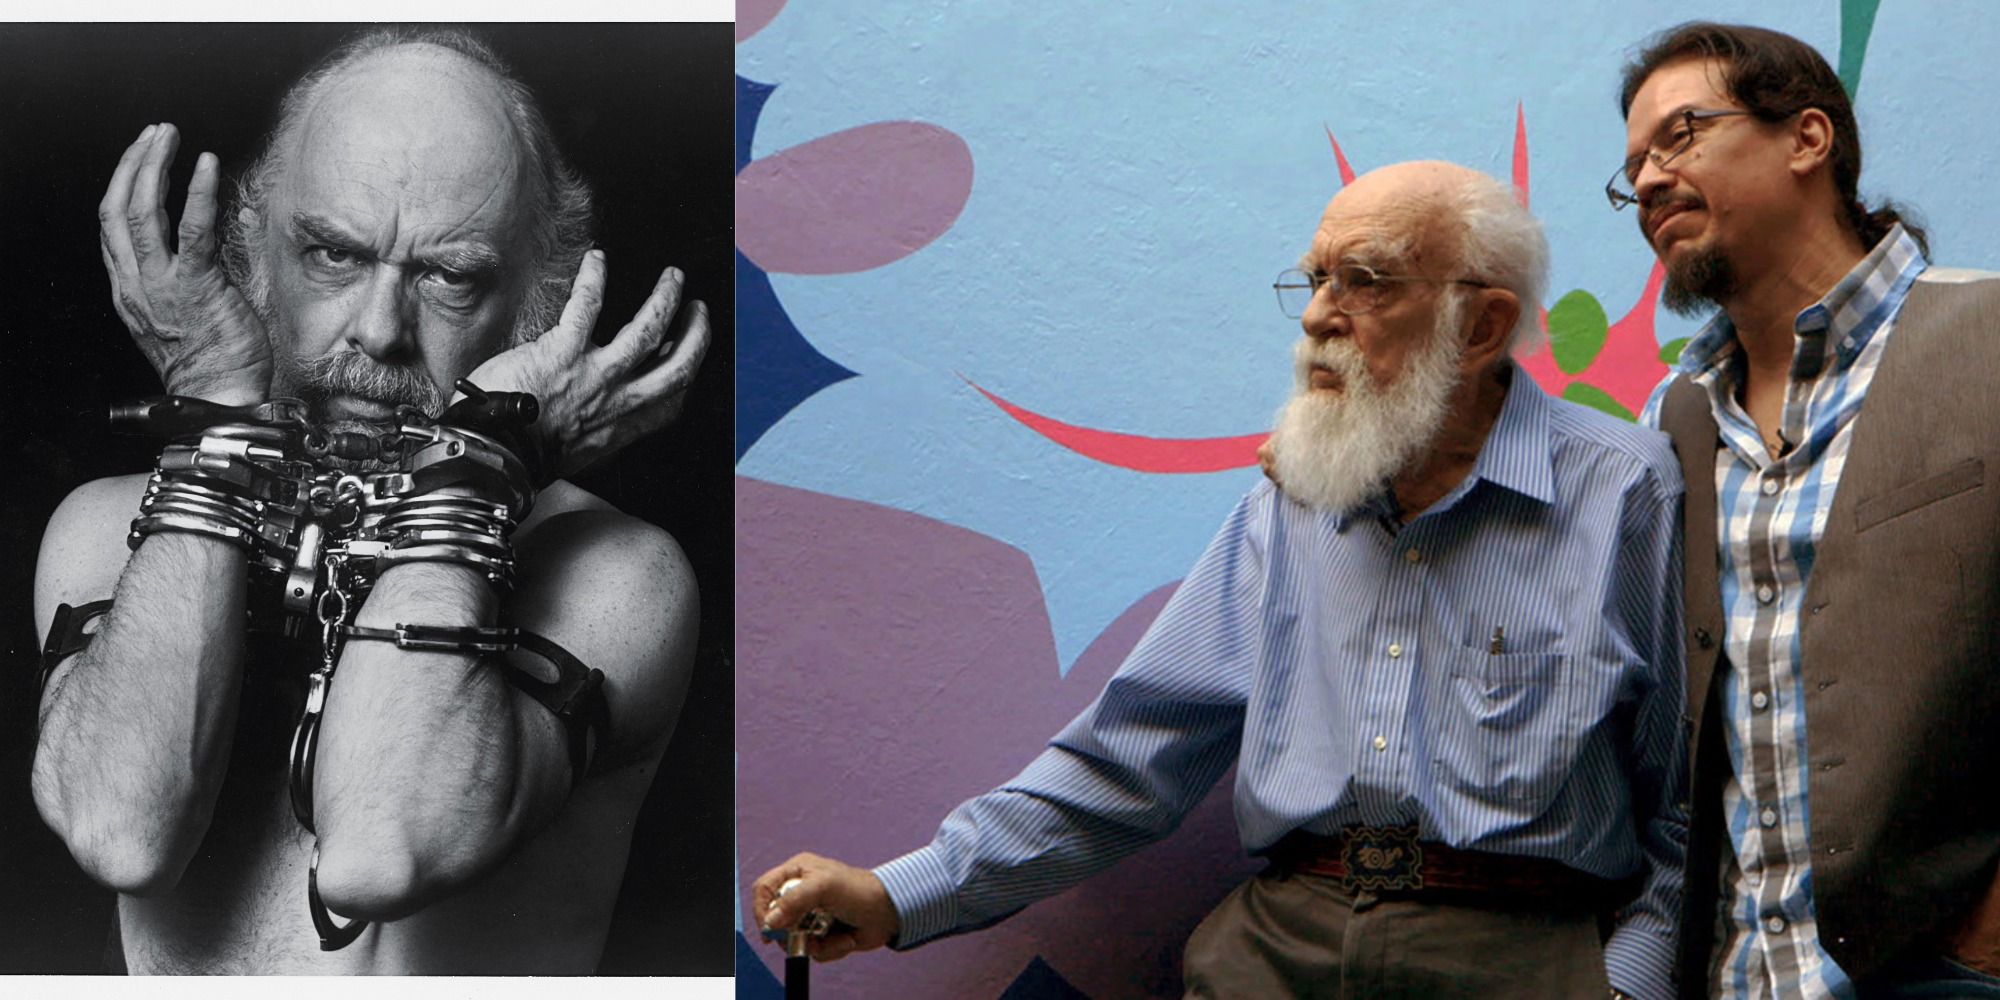 James Randi, The Amazing Randi, with Boyfriend, escape artist